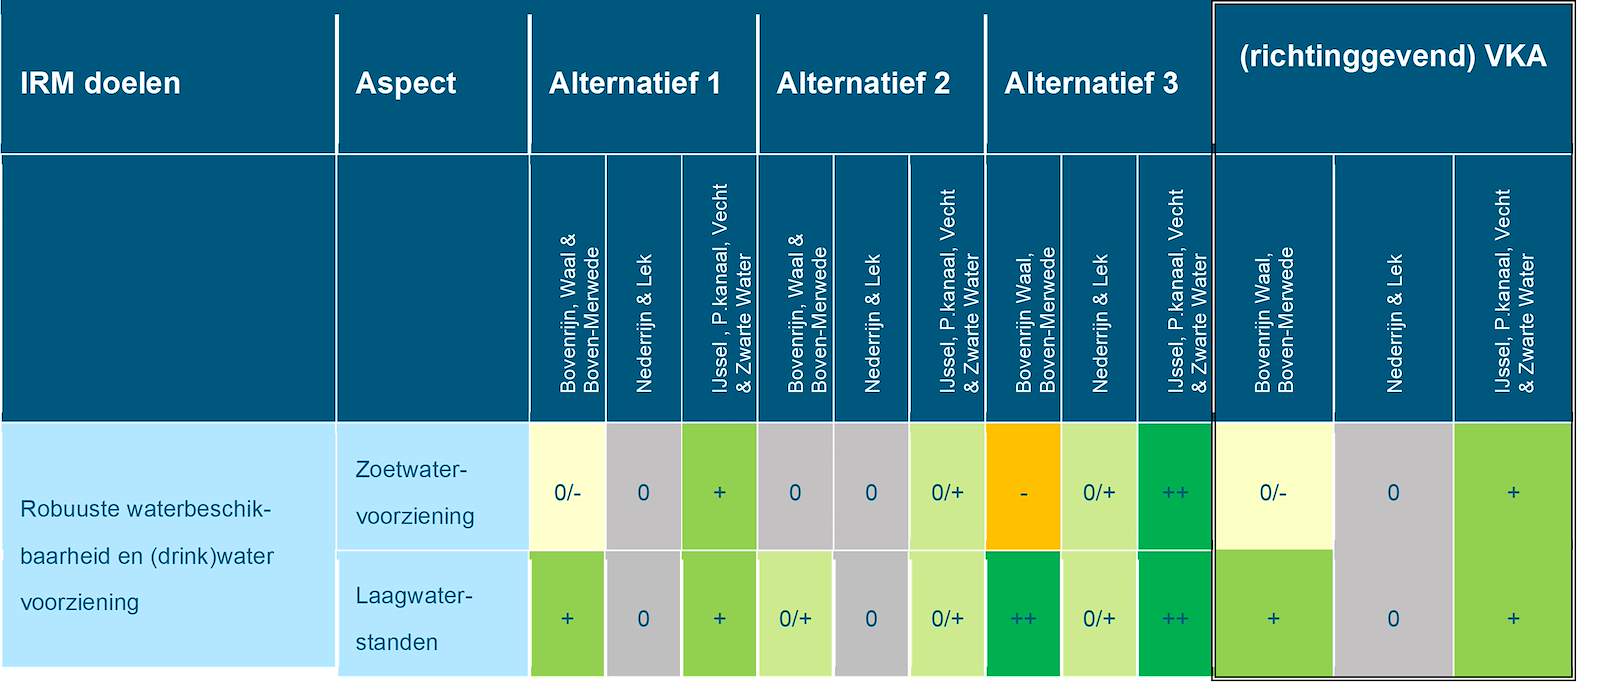 Deze tabel laat de totaalbeoordeling voor het doelbereik van het beoordelingsaspect robuuste zoetwaterbeschikbaarheid zien voor de Rijntakken, voor de drie alternatieven en het richtinggevend VKA. Deze beoordeling is toegelicht in de tekst voorafgaande aan de tabel.